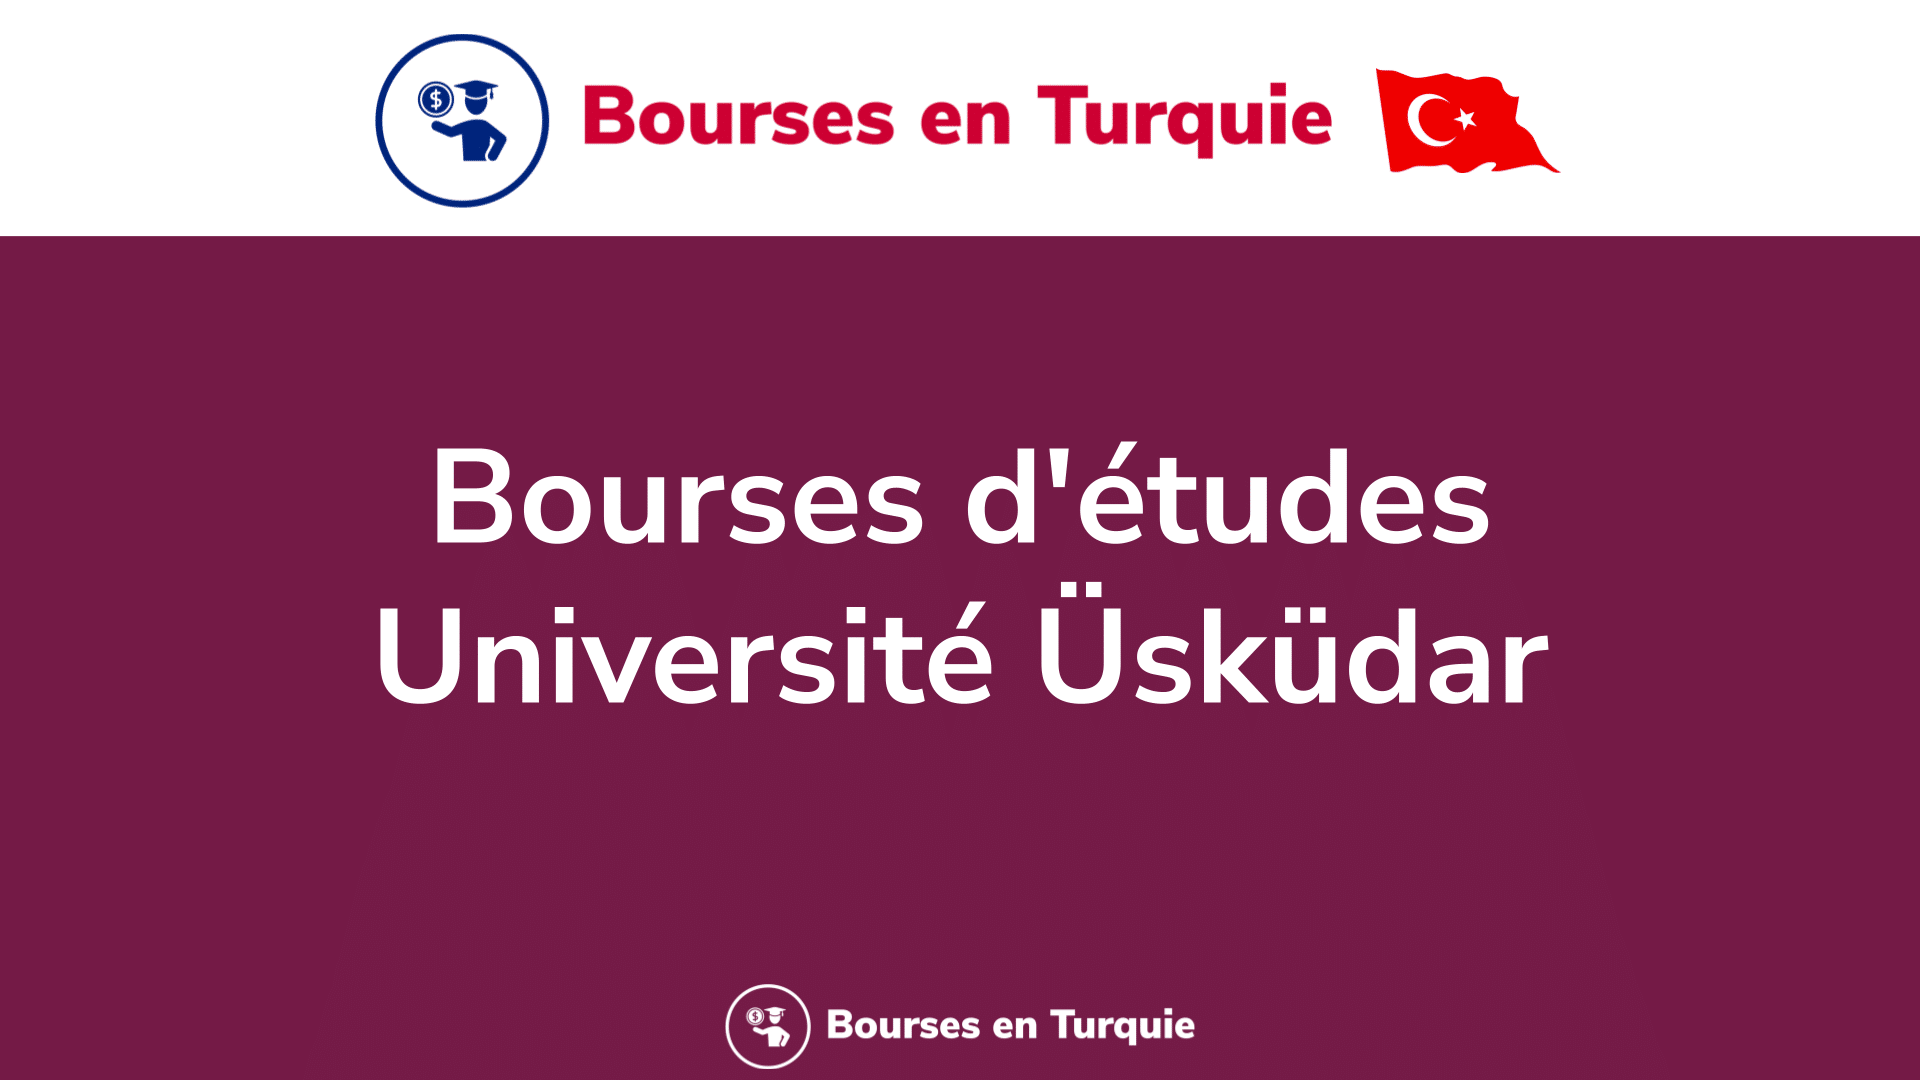 Bourses d'études Université Üsküdar